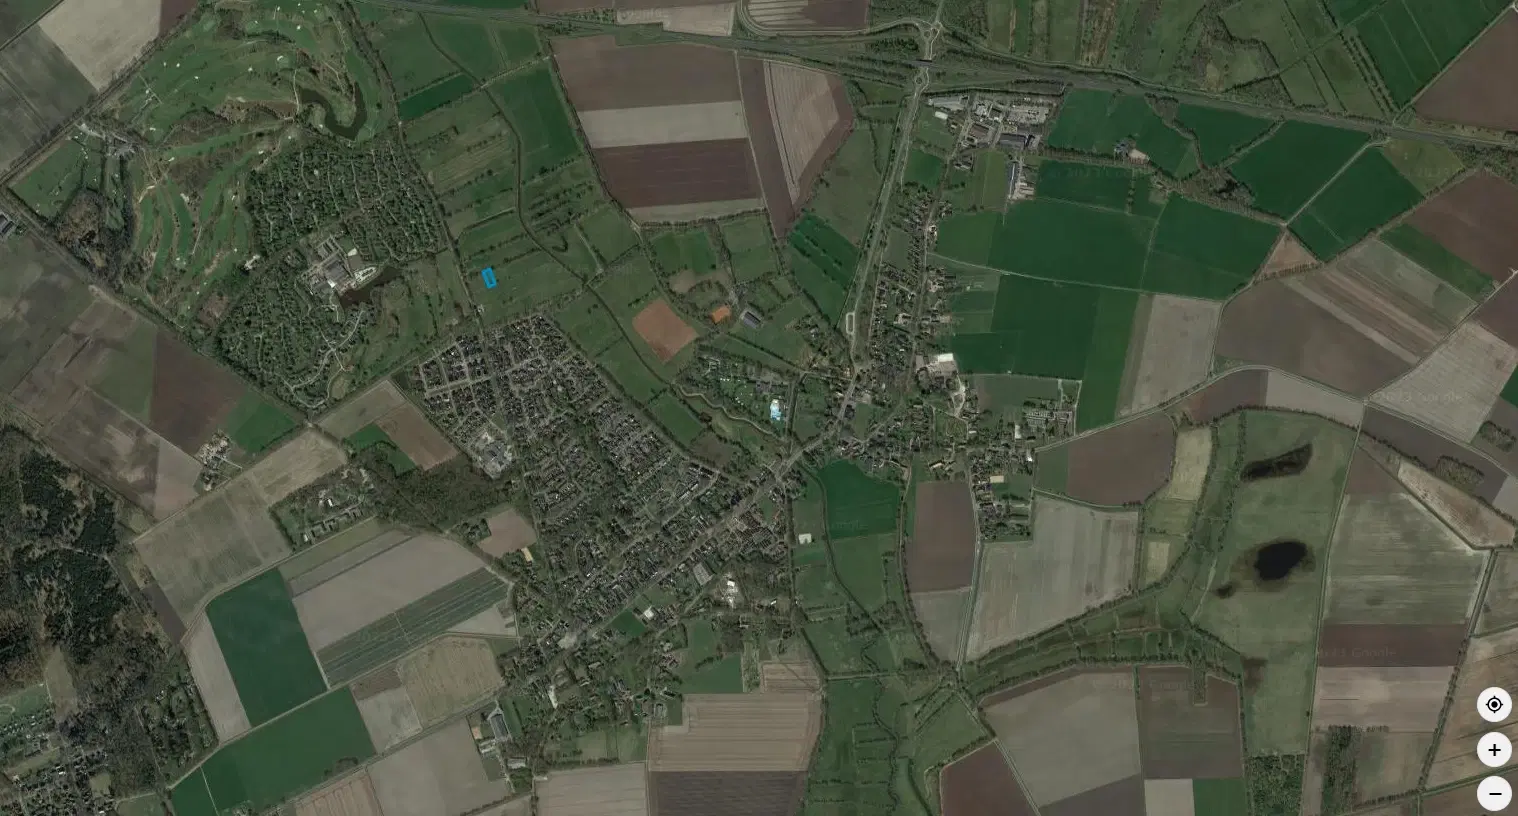 Percelen agrarische grond (perceelnummers 659, 684) gelegen nabij de Paardelandsdrift ong. te Aalden